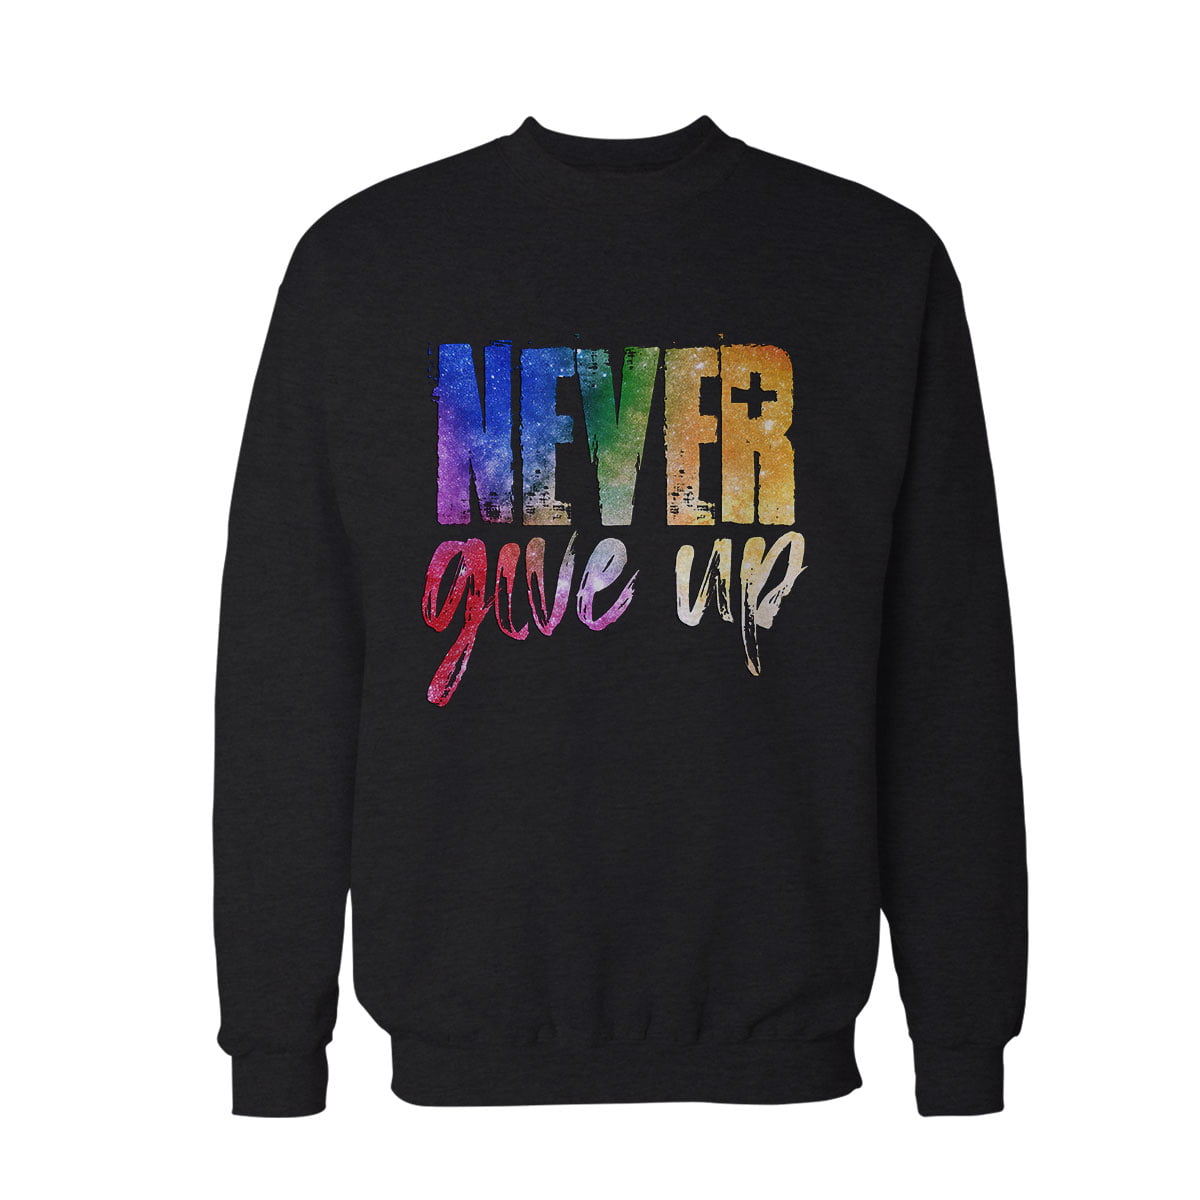 Never give up sweatshirt s - never give up baskılı sweatshirt - figurex